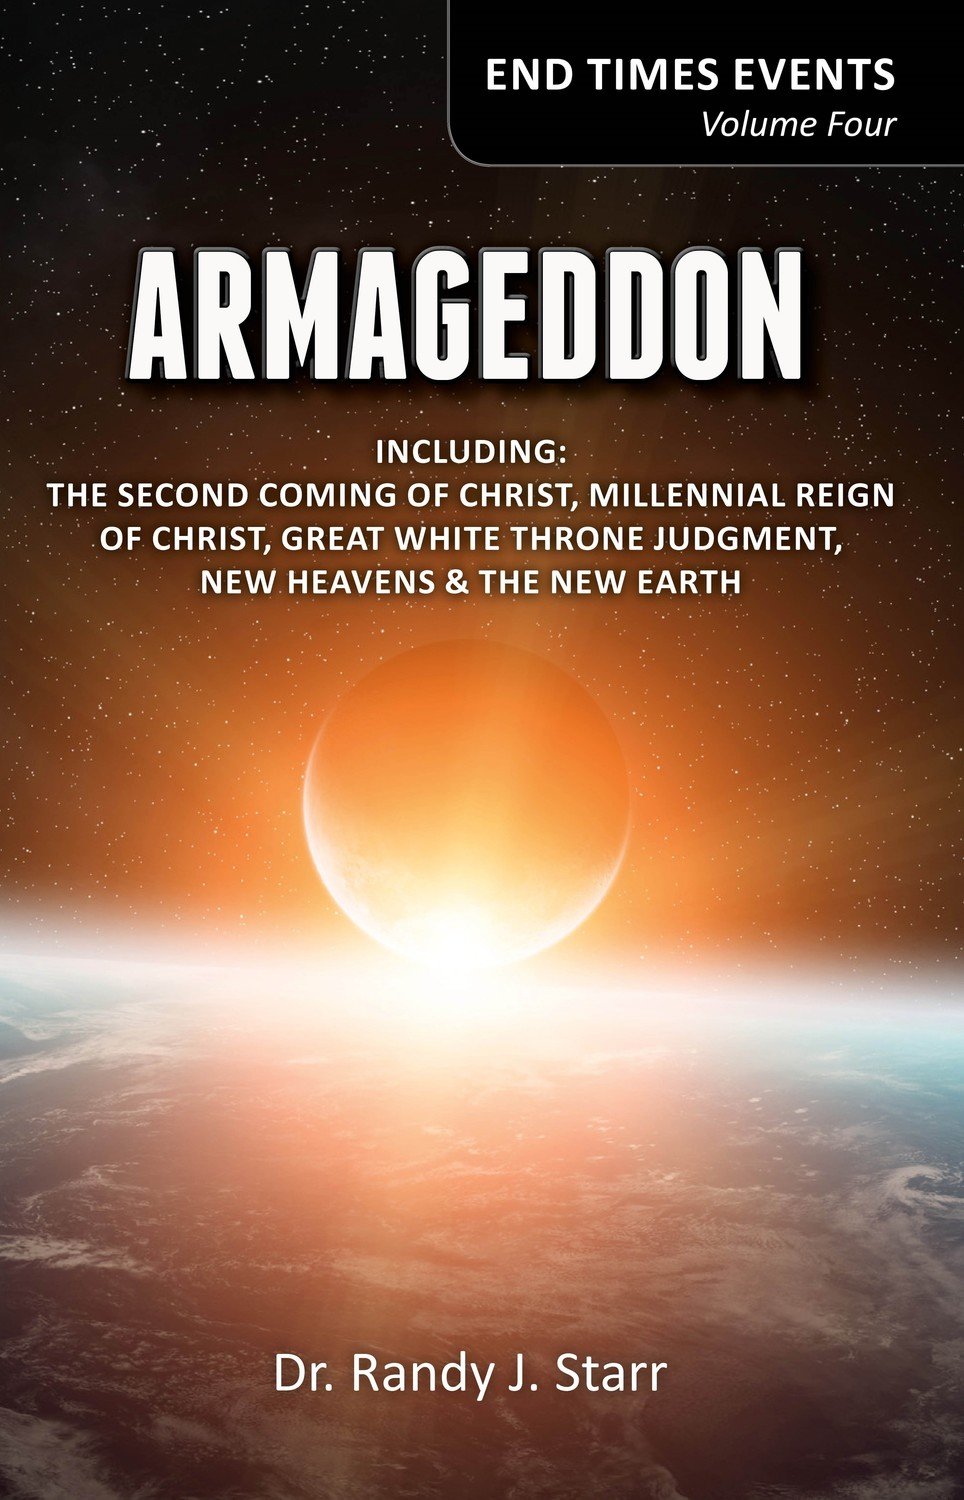 End Time Events volume 4 - Armageddon